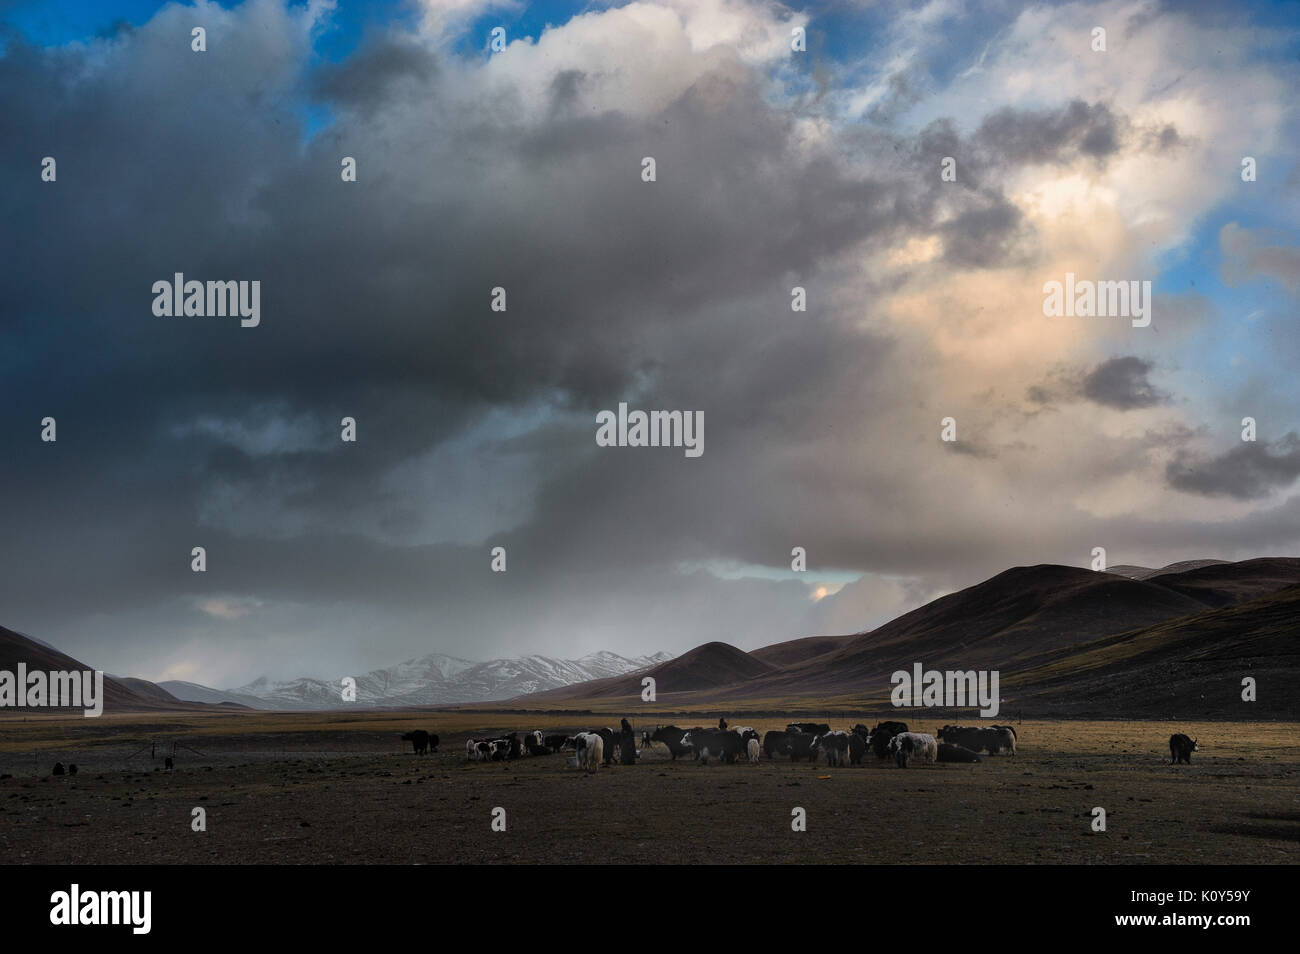 Los nómadas tibetanos atando sus yaks alrededor de su campamento en las tierras altas de la meseta tibetana Foto de stock